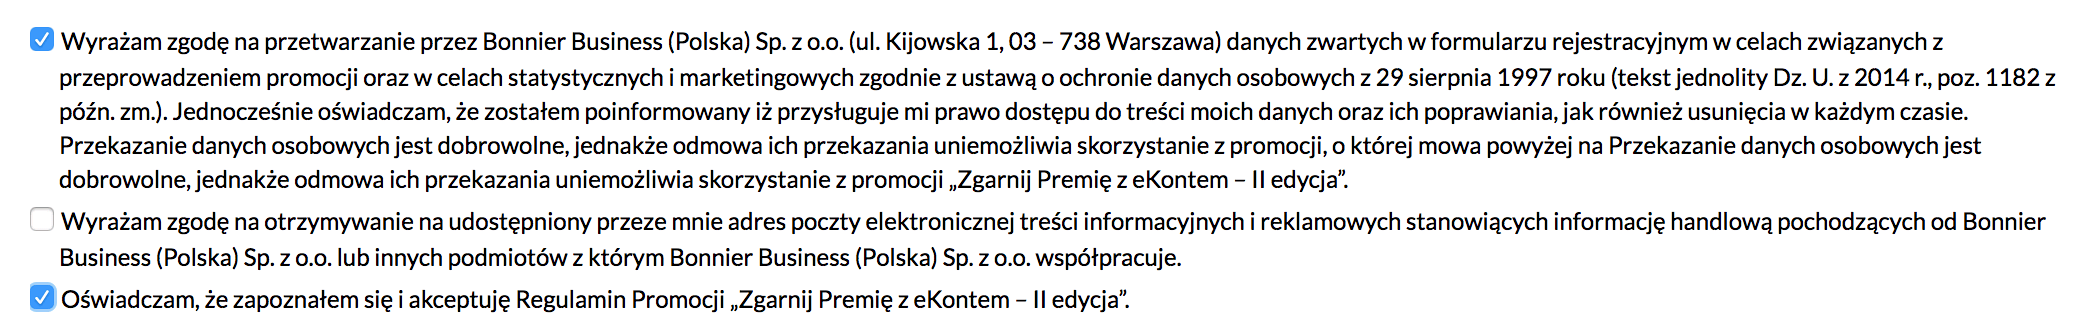 Zgody w promocji eKonto 2 zgarnij premię bankier.pl